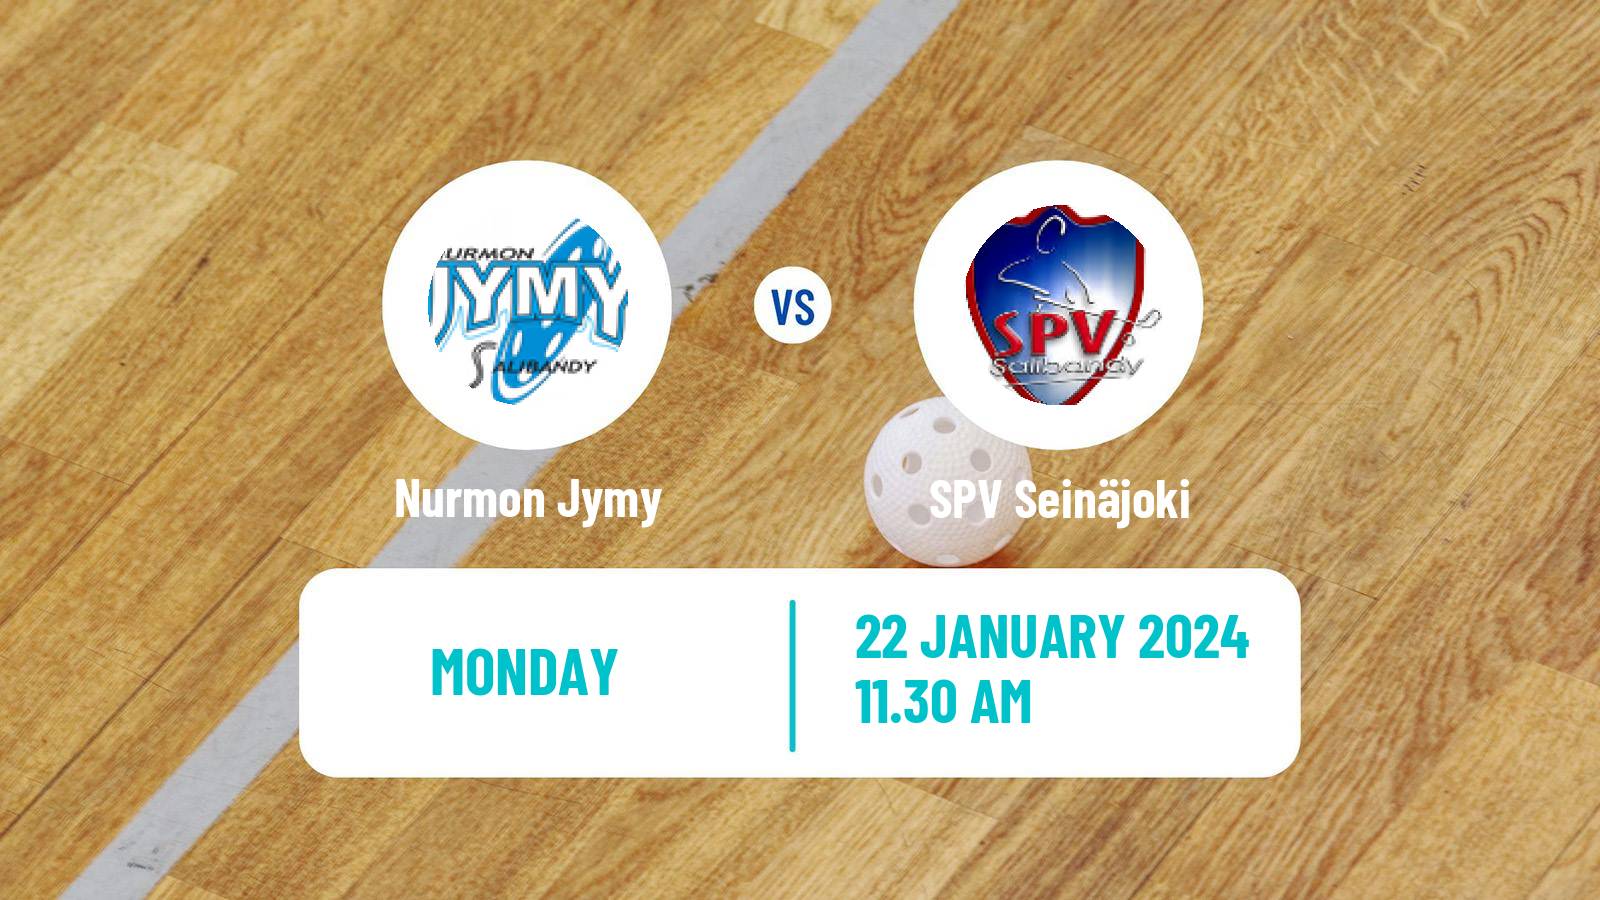 Floorball Finnish F-Liiga Nurmon Jymy - SPV Seinäjoki